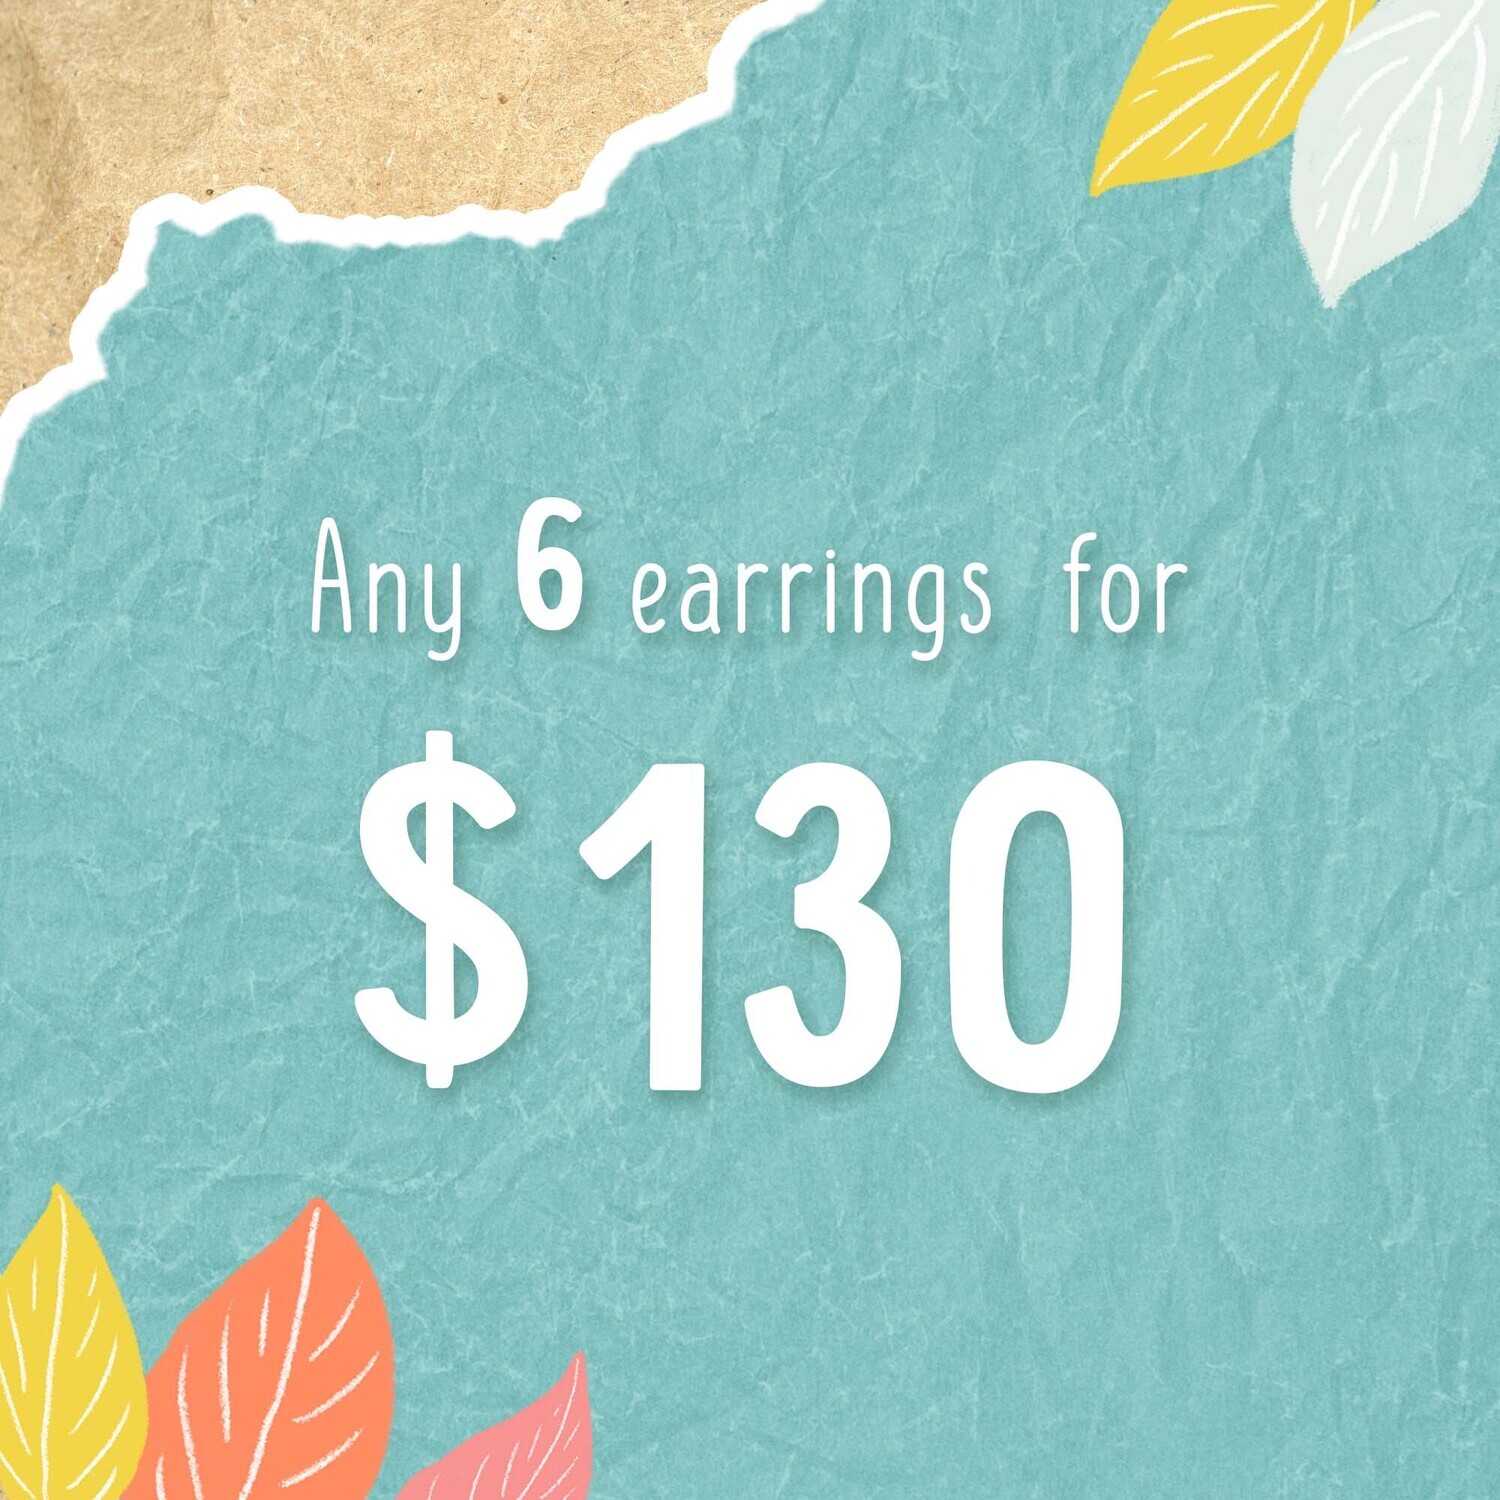 Earring deal! Any 6 earrings for $130